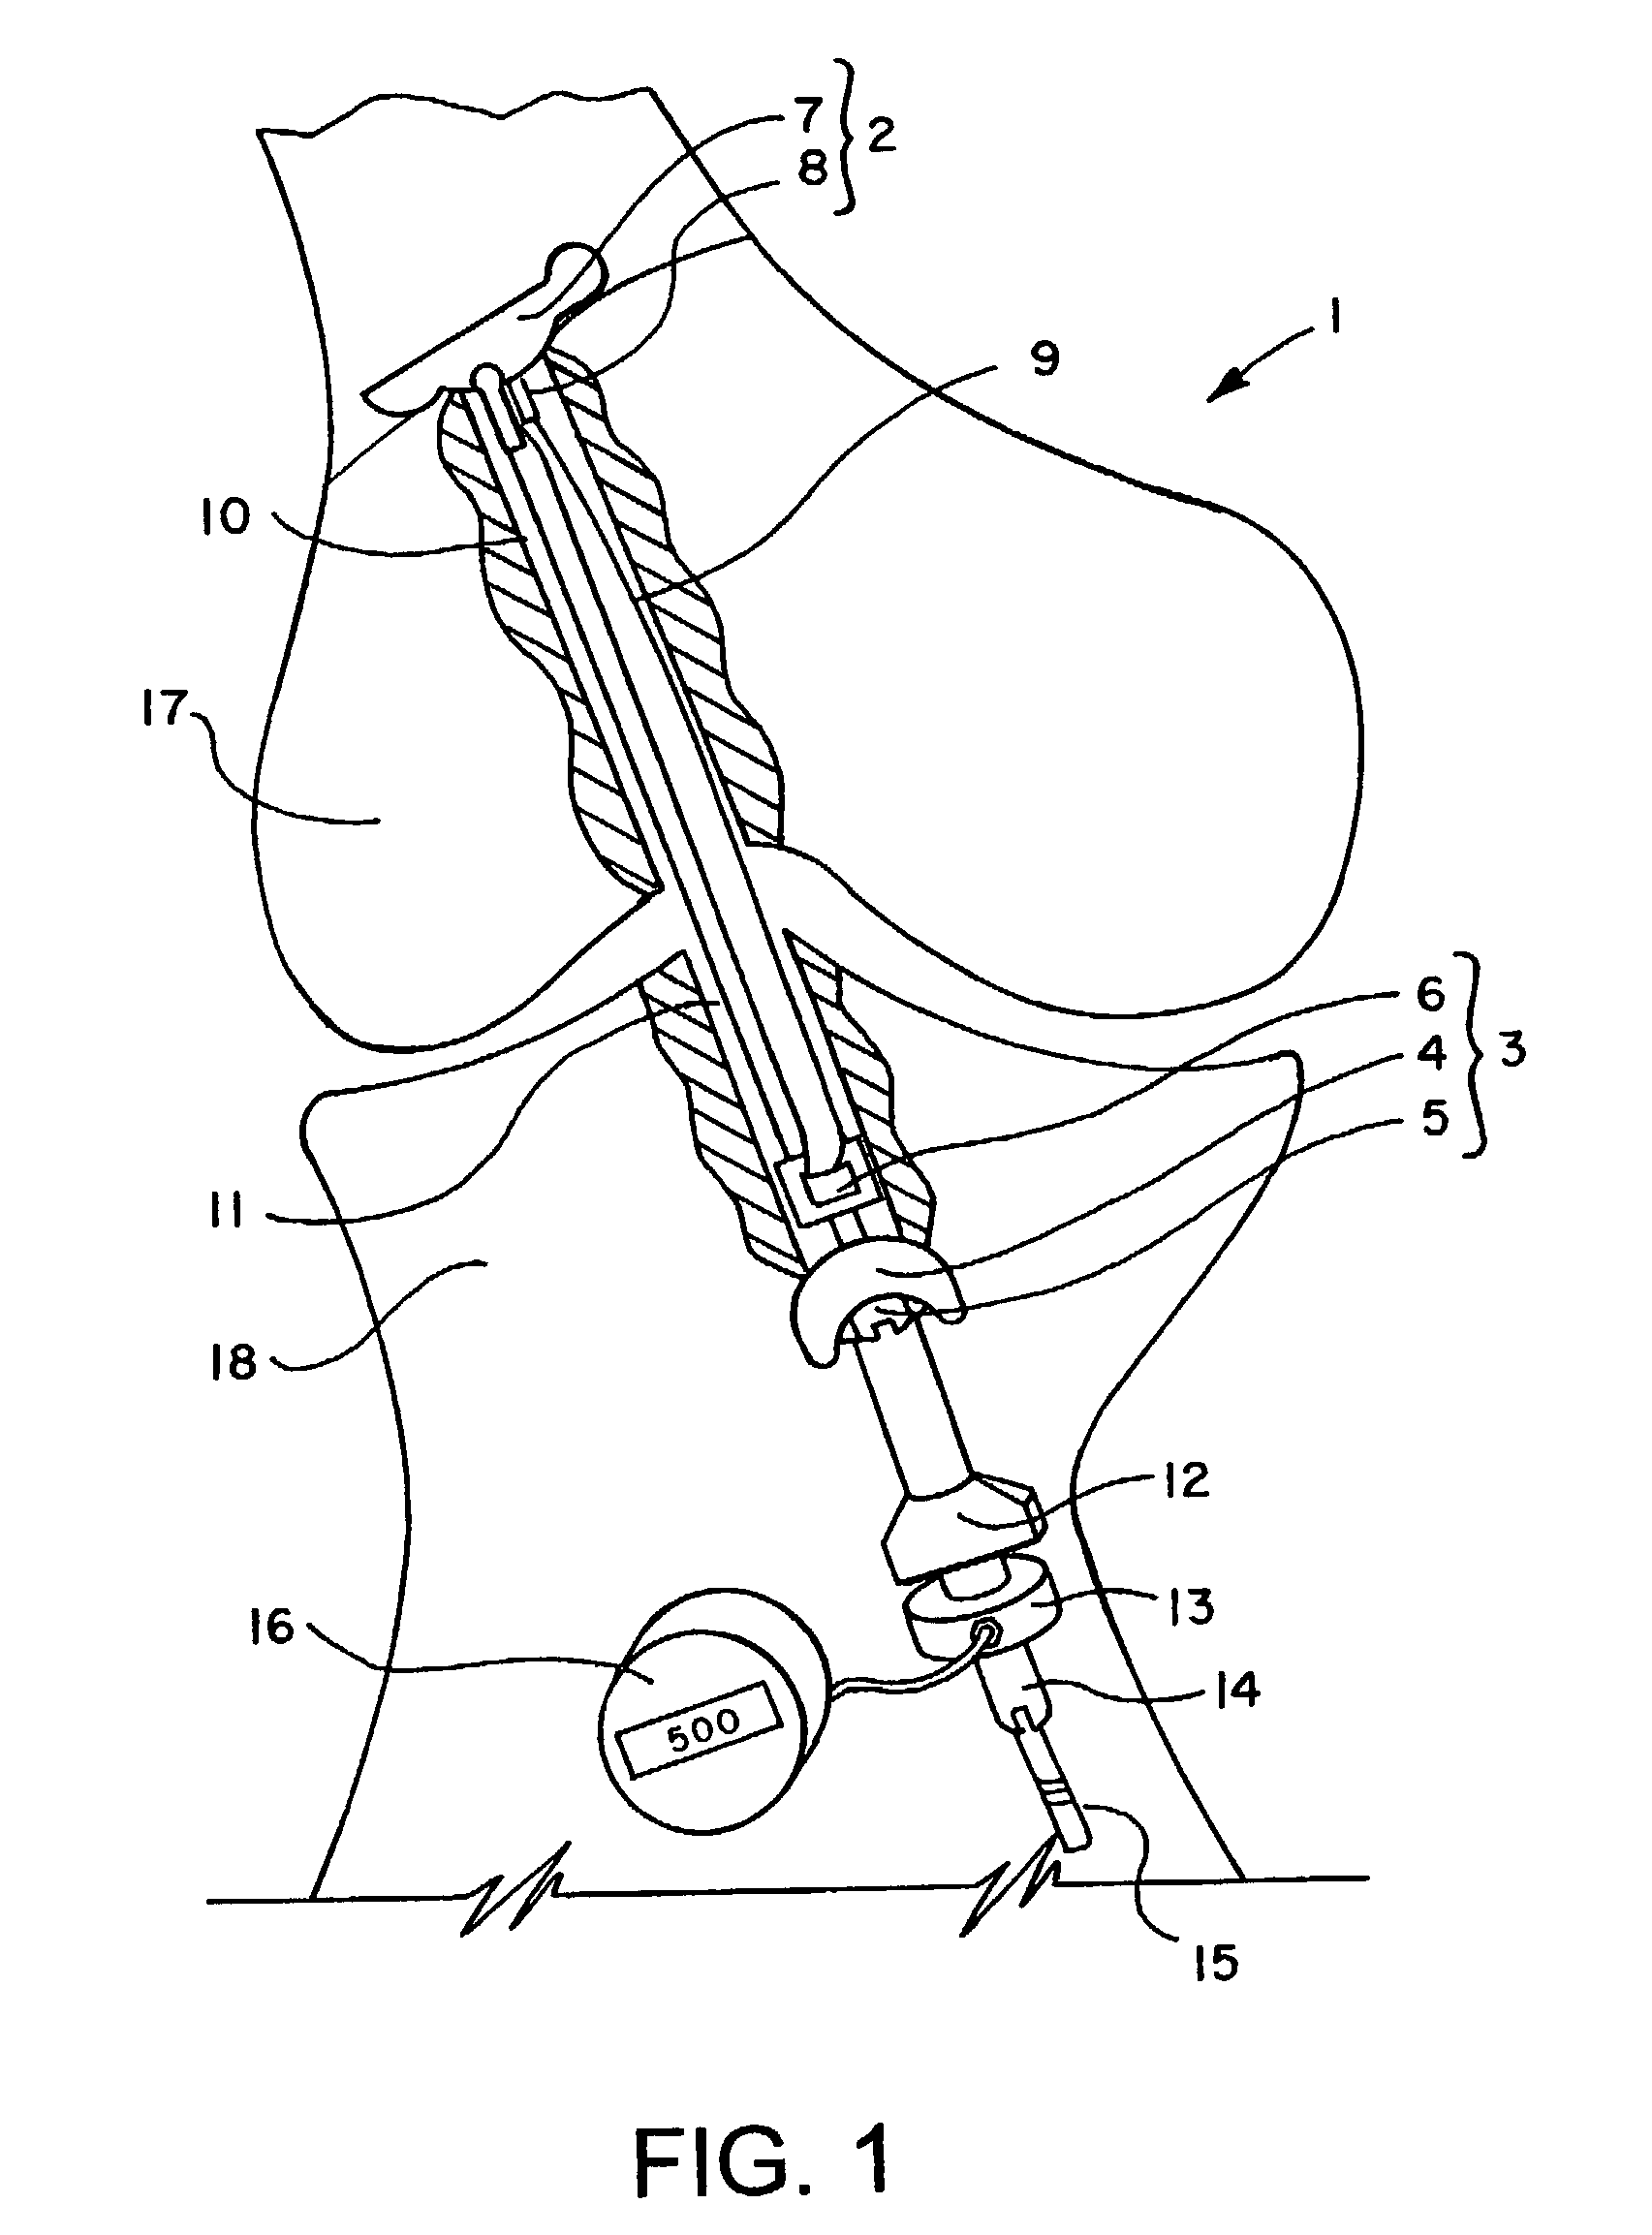 Flip-wing tissue retainer